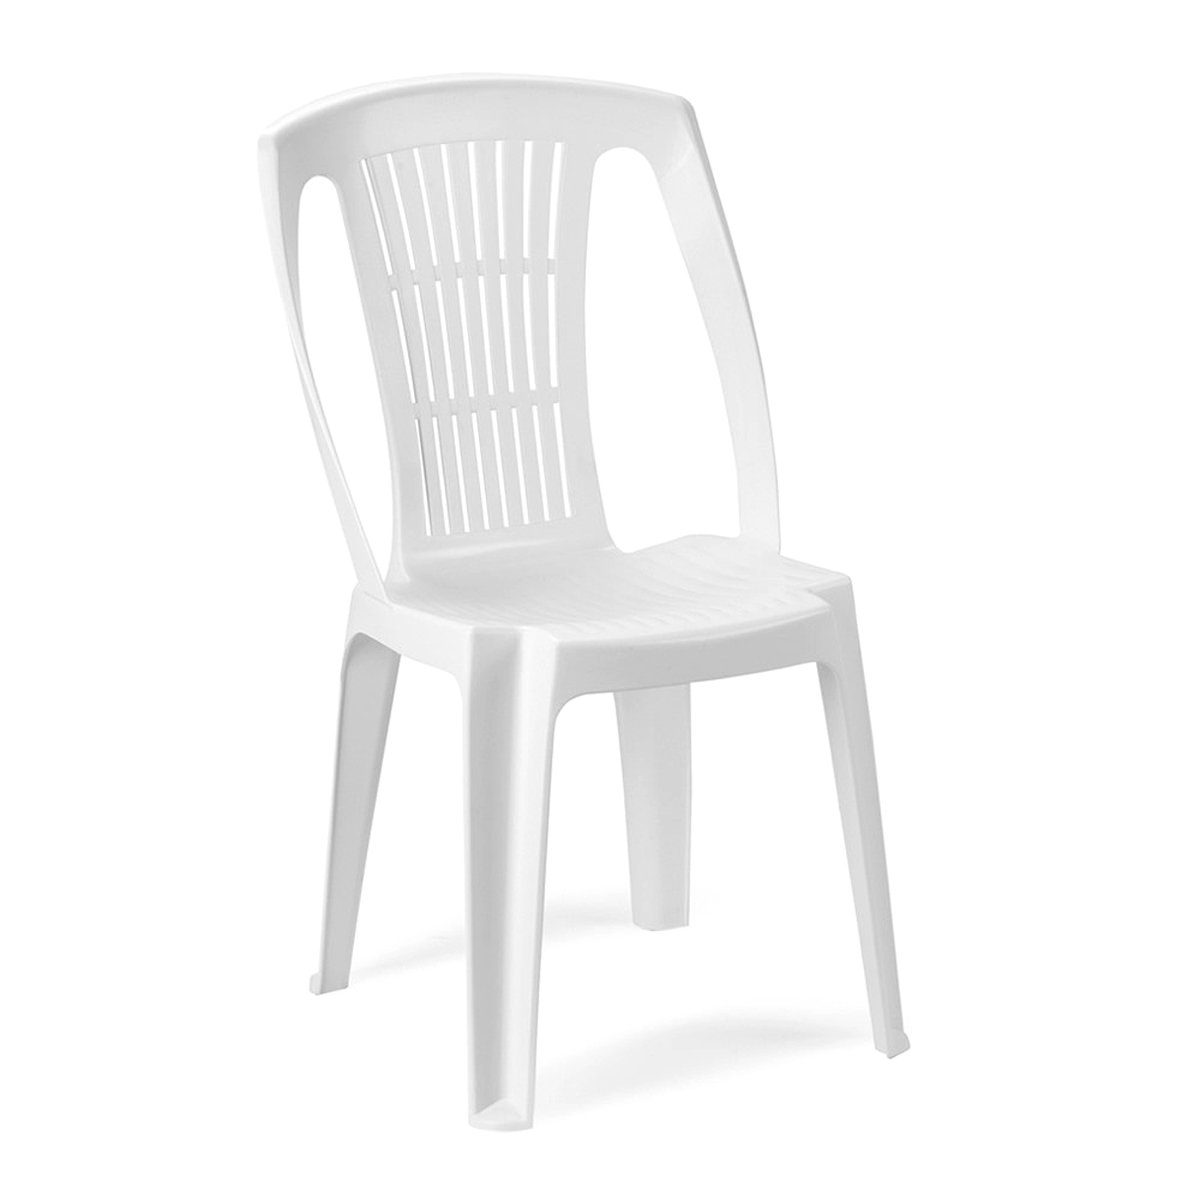 INDA-Exclusiv Armlehnstuhl Stapelstuhl Gartenstuhl Bistrostuhl ohne Armlehnen Kunststoff Weiß